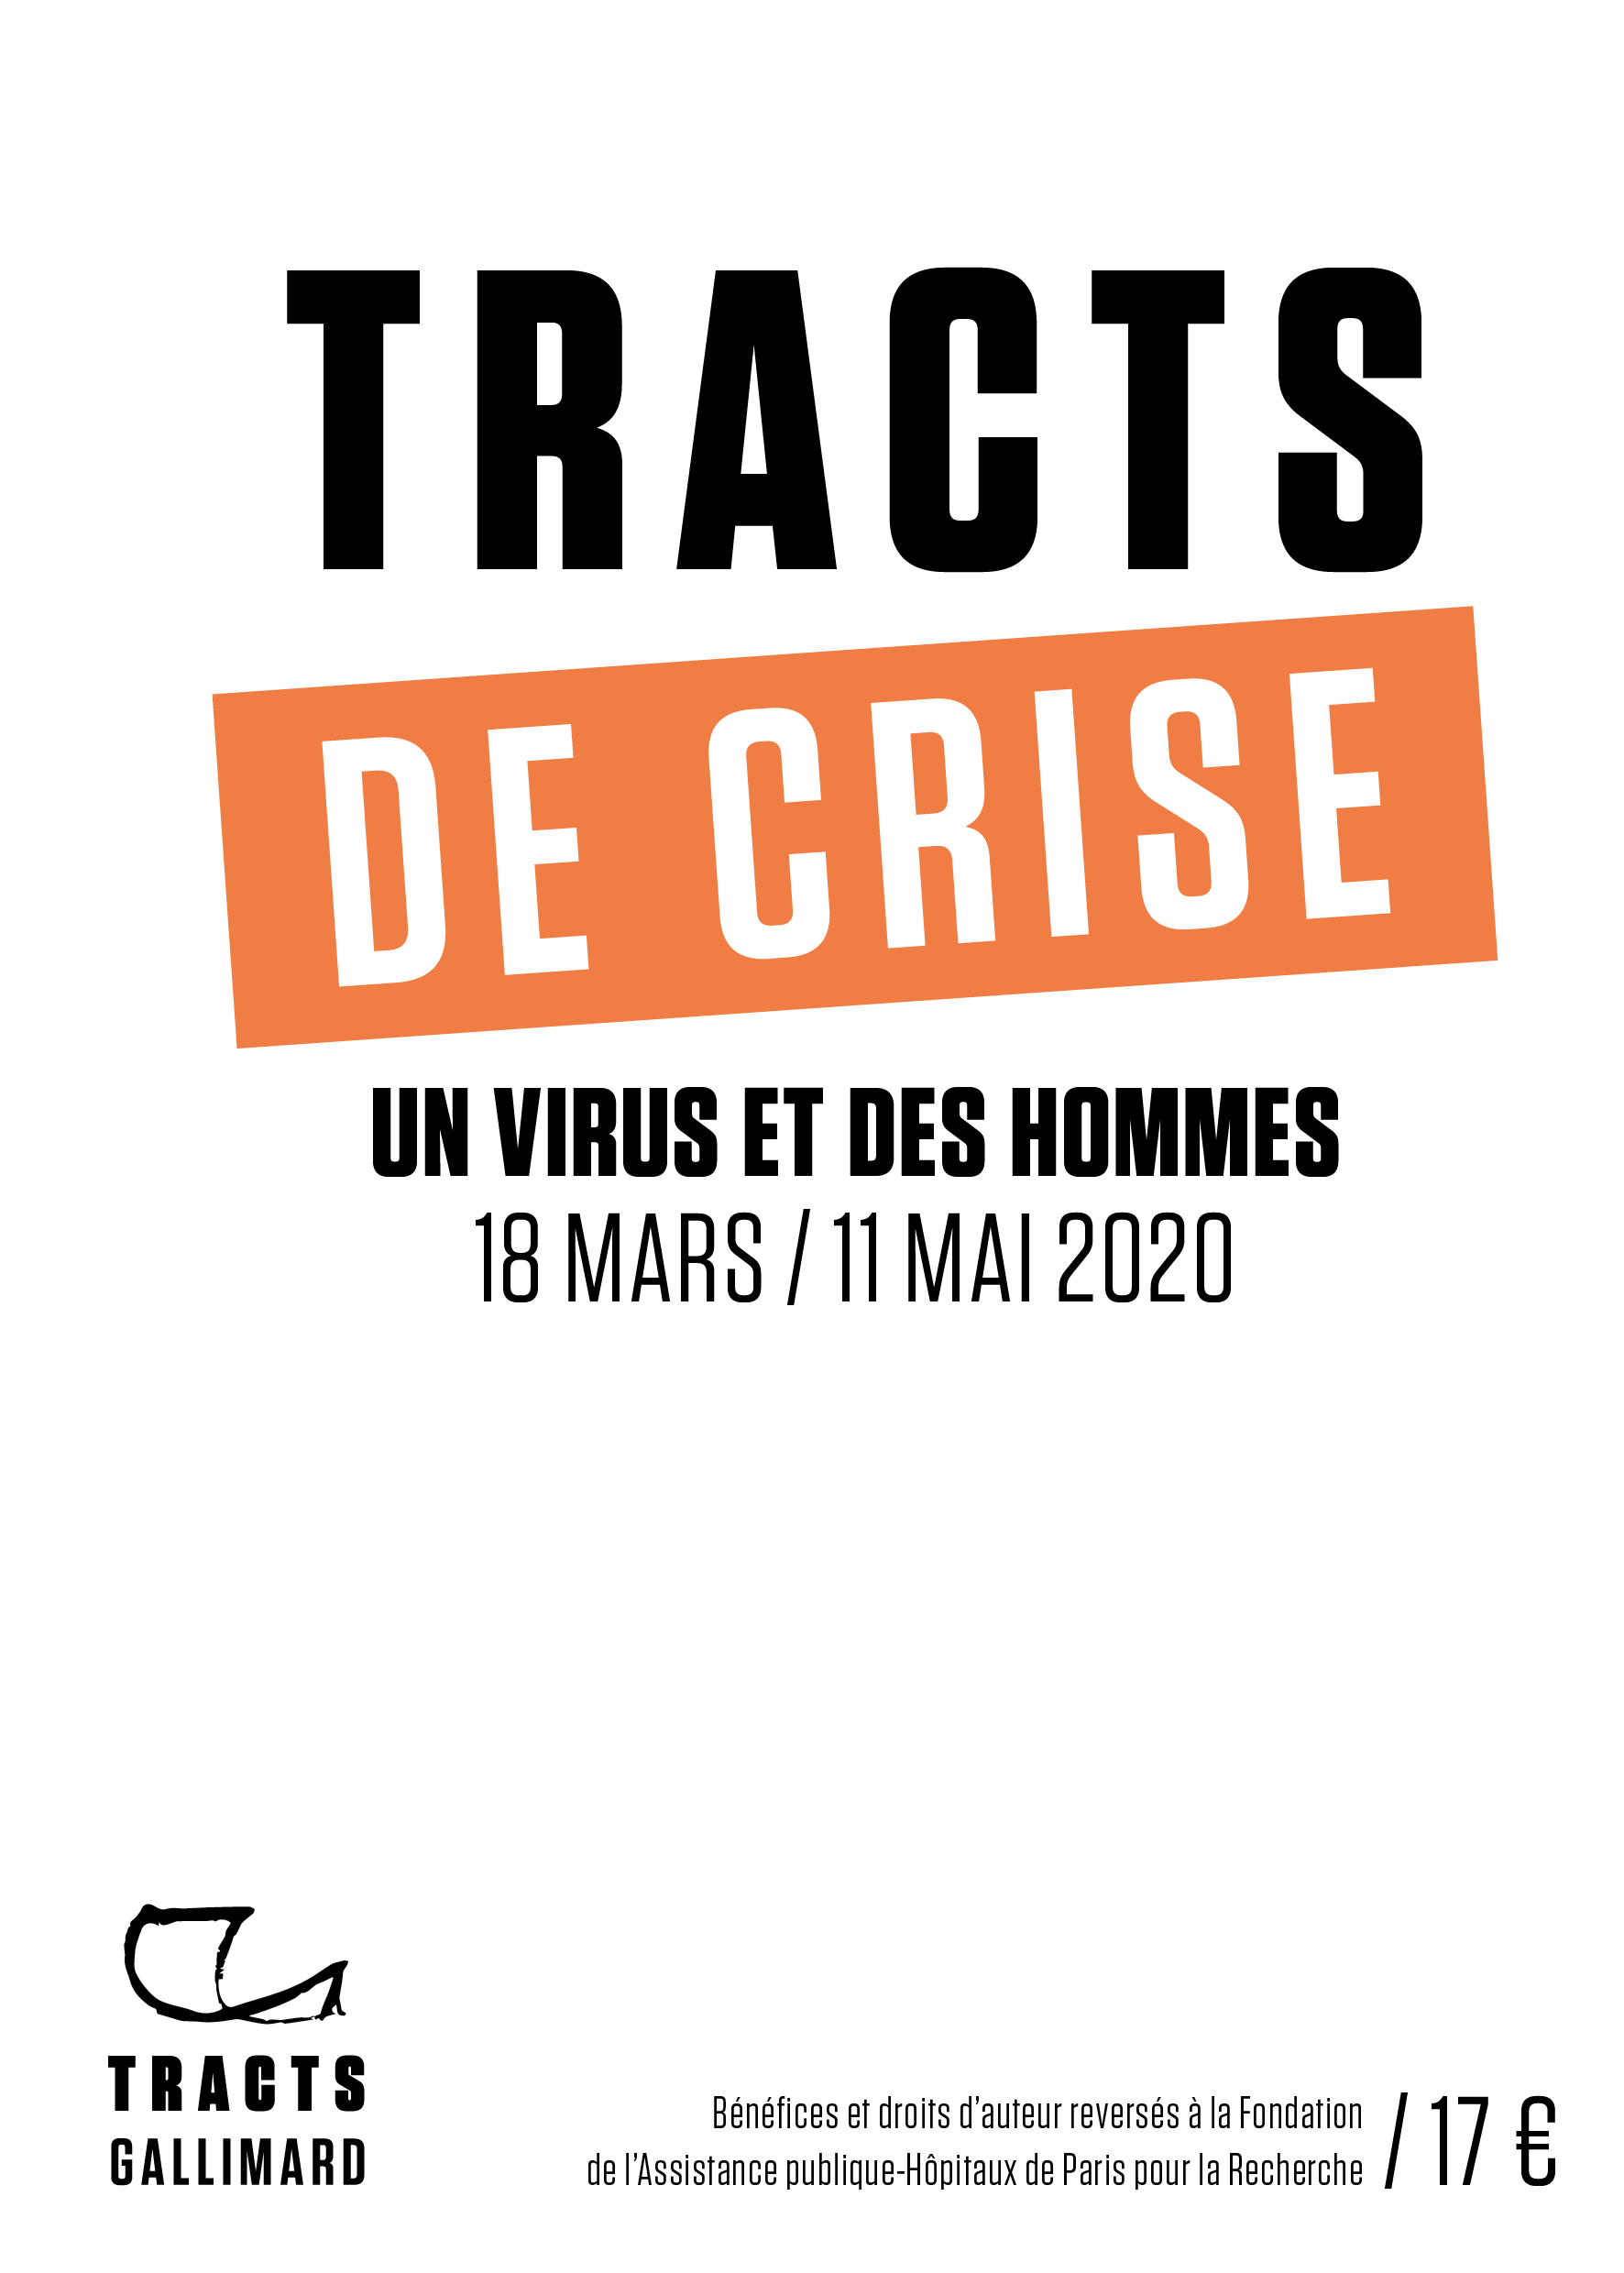 Tracts de crise. Un virus et des hommes, 18 mars-11 mai 2020